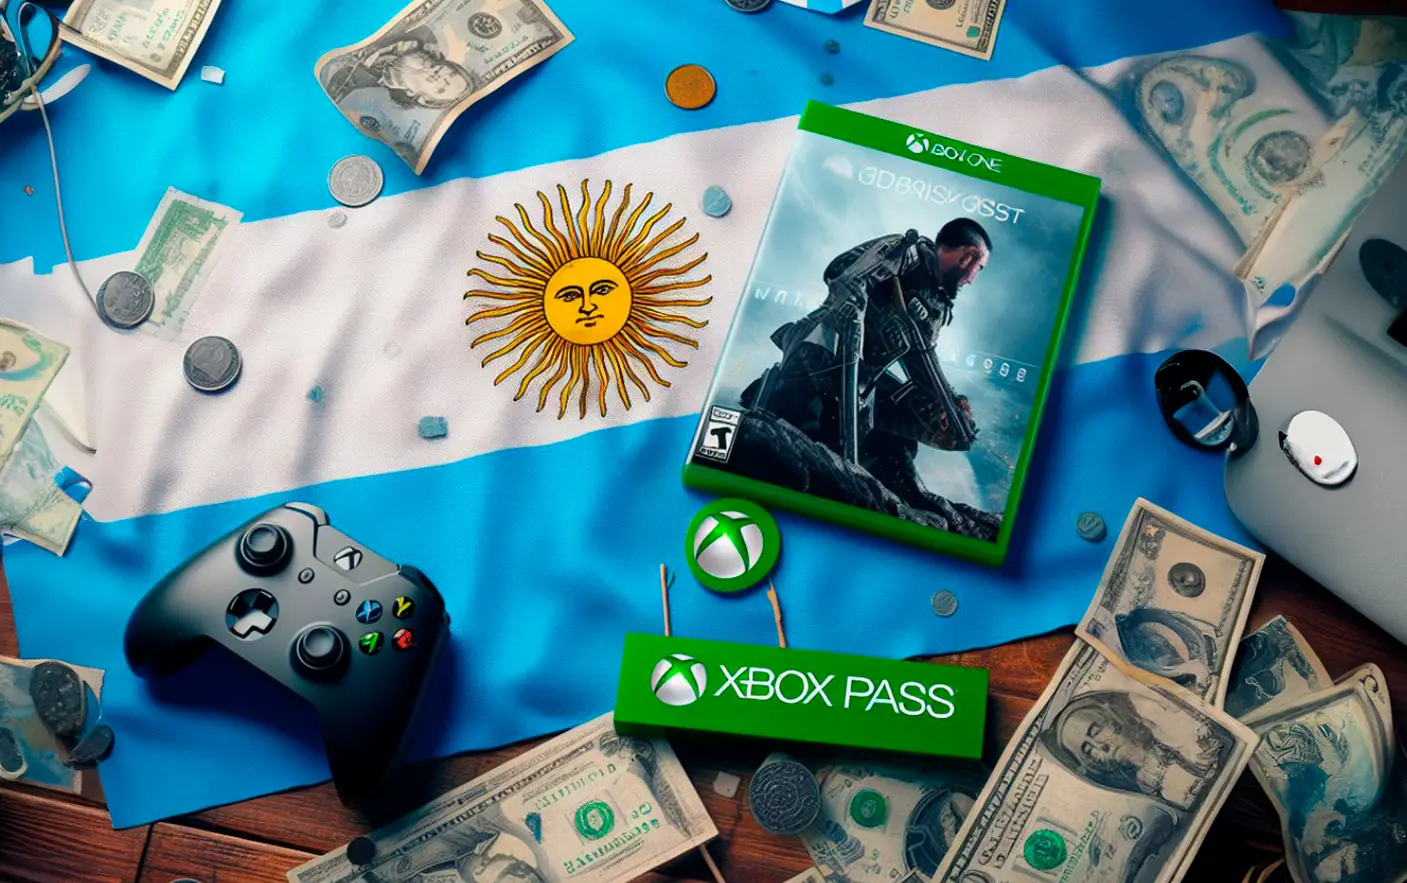 Game Pass Core: qué es y qué ofrece la nueva suscripción de Xbox Game Pass